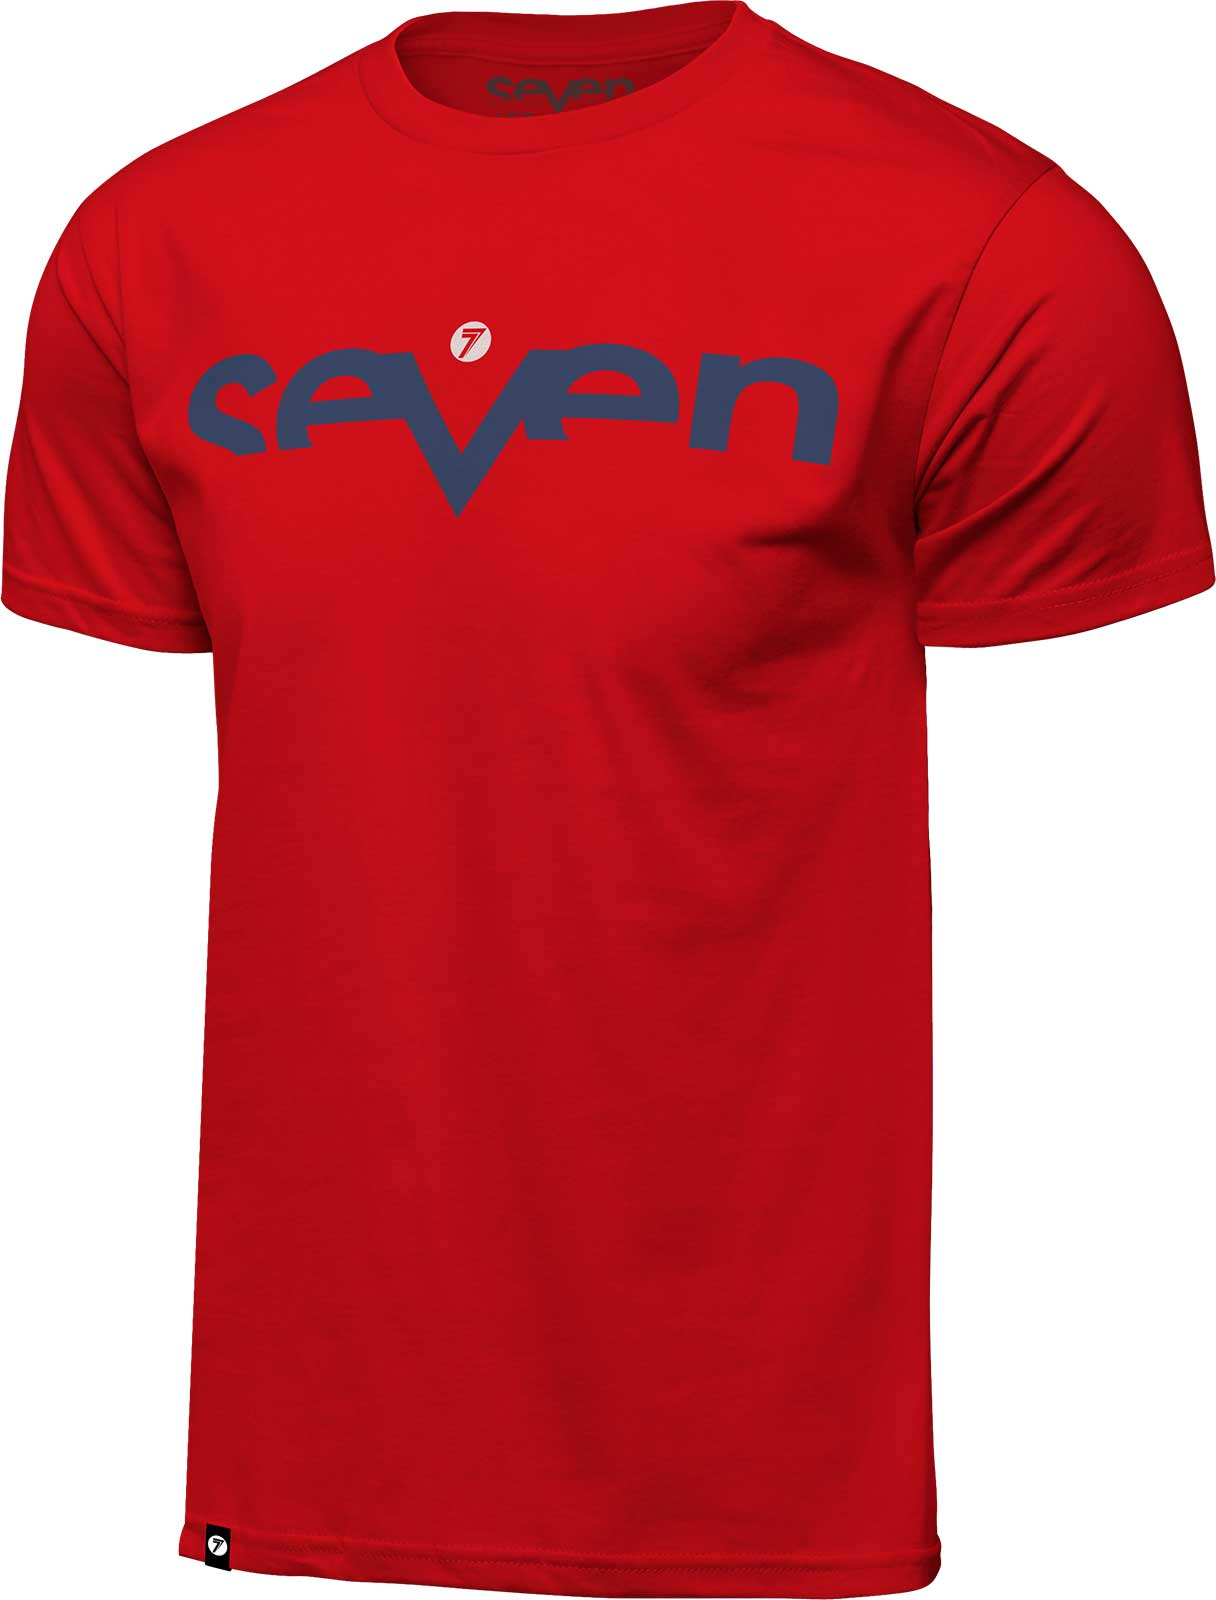 Seven Brand T-Shirt - Mens Tee